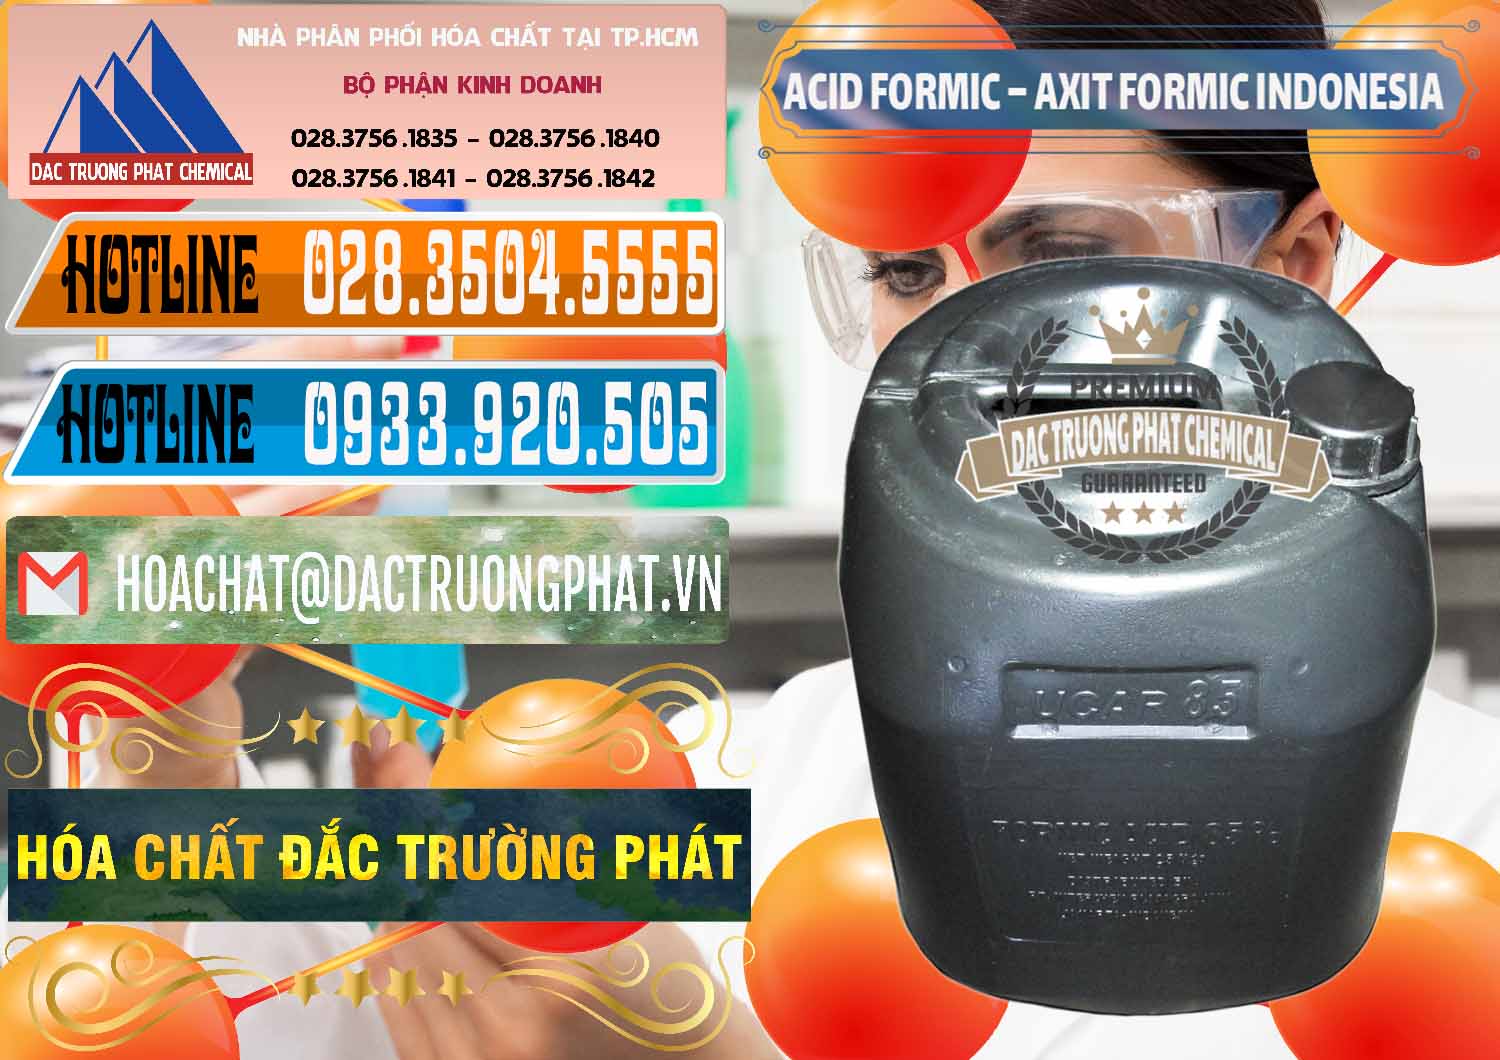 Công ty cung ứng & bán Acid Formic - Axit Formic Indonesia - 0026 - Nơi chuyên bán & cung cấp hóa chất tại TP.HCM - stmp.net